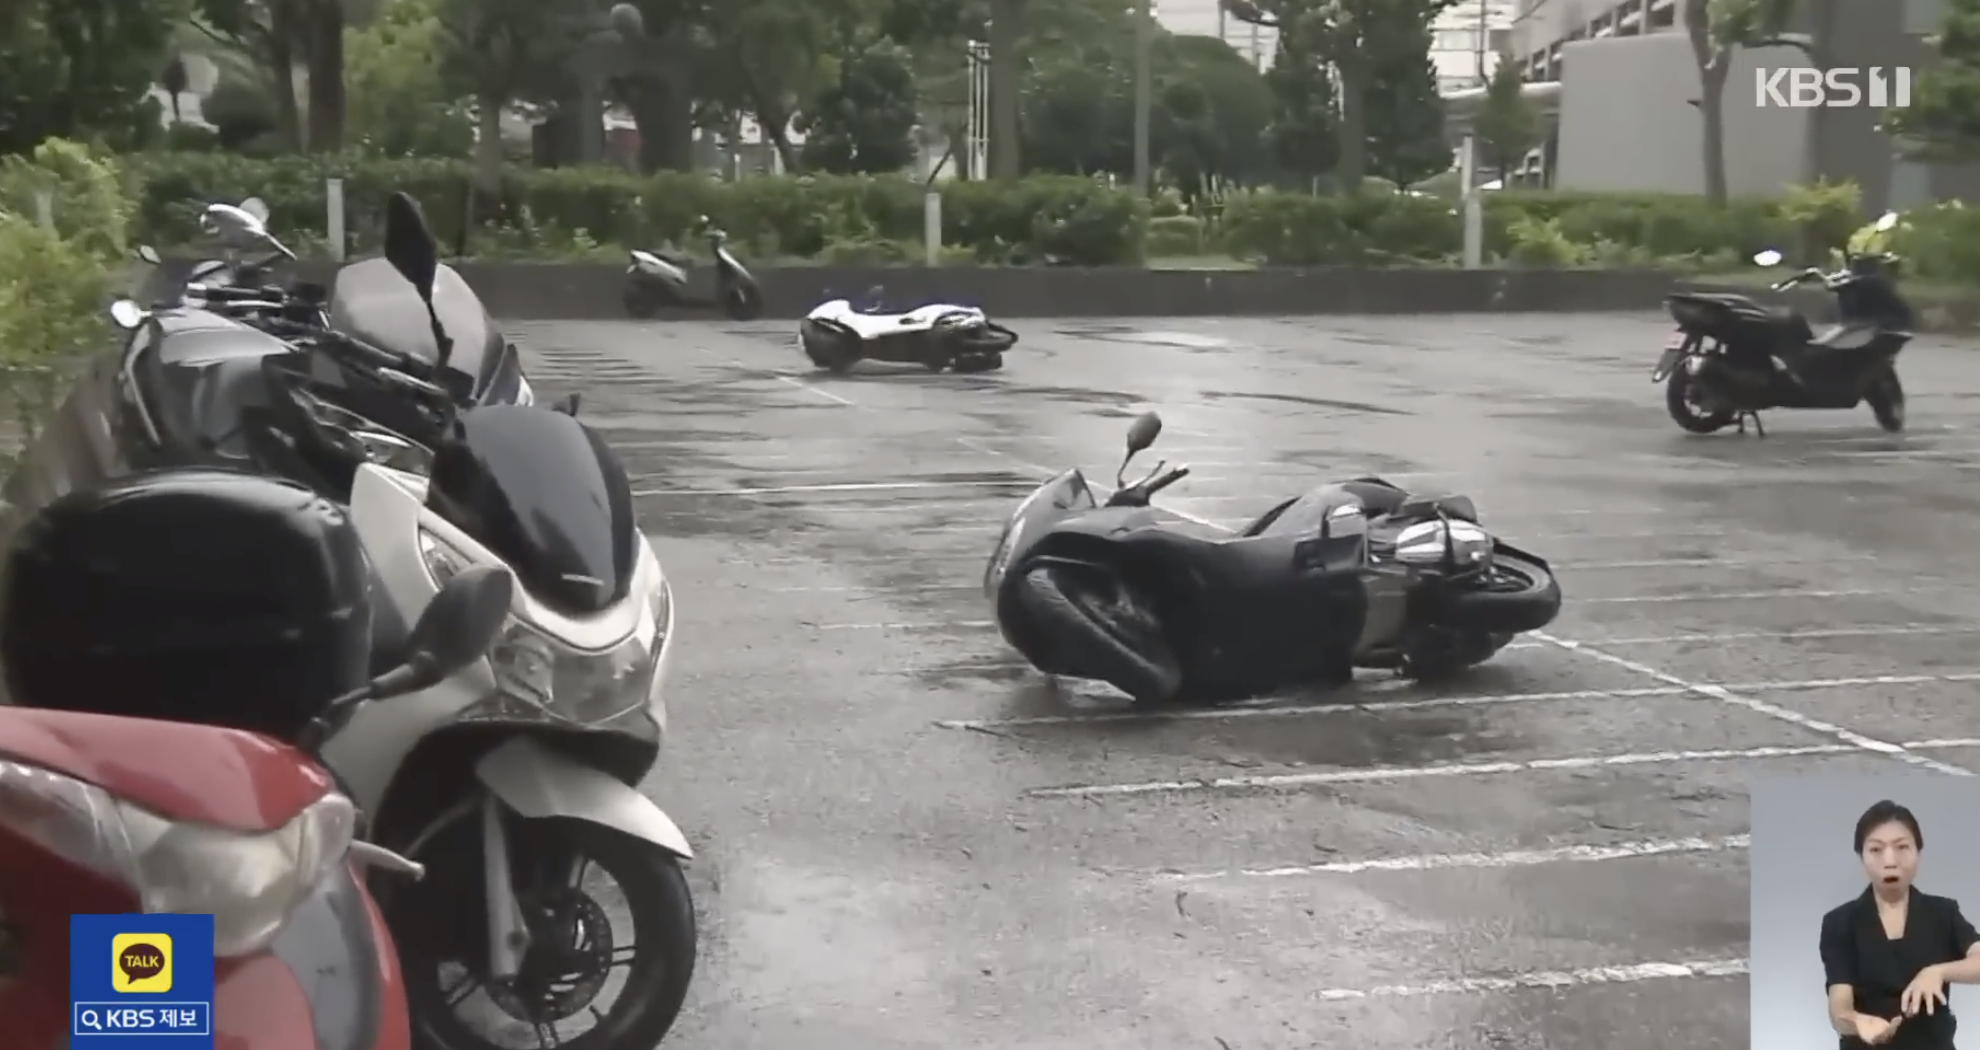 태풍으로 쓰러진 오토바이